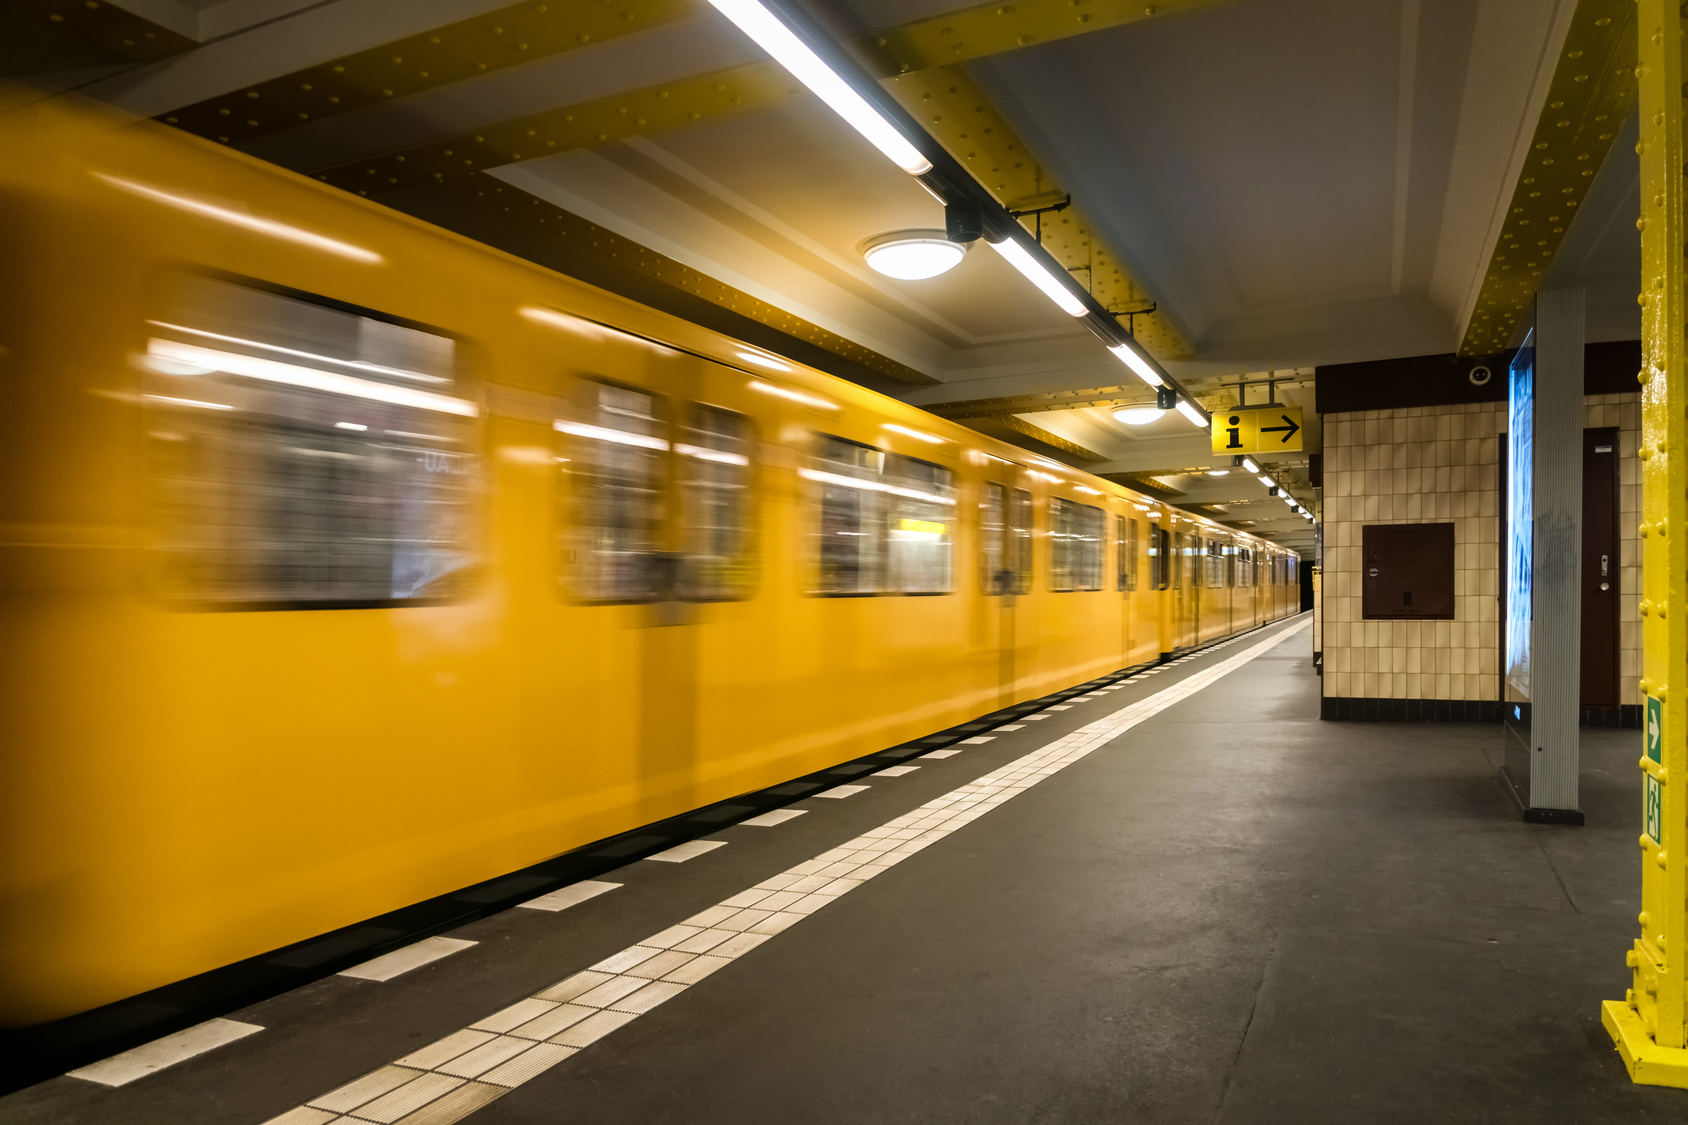 18-jährige Frau vor die U-Bahn geschubst - Täter auf der Flucht